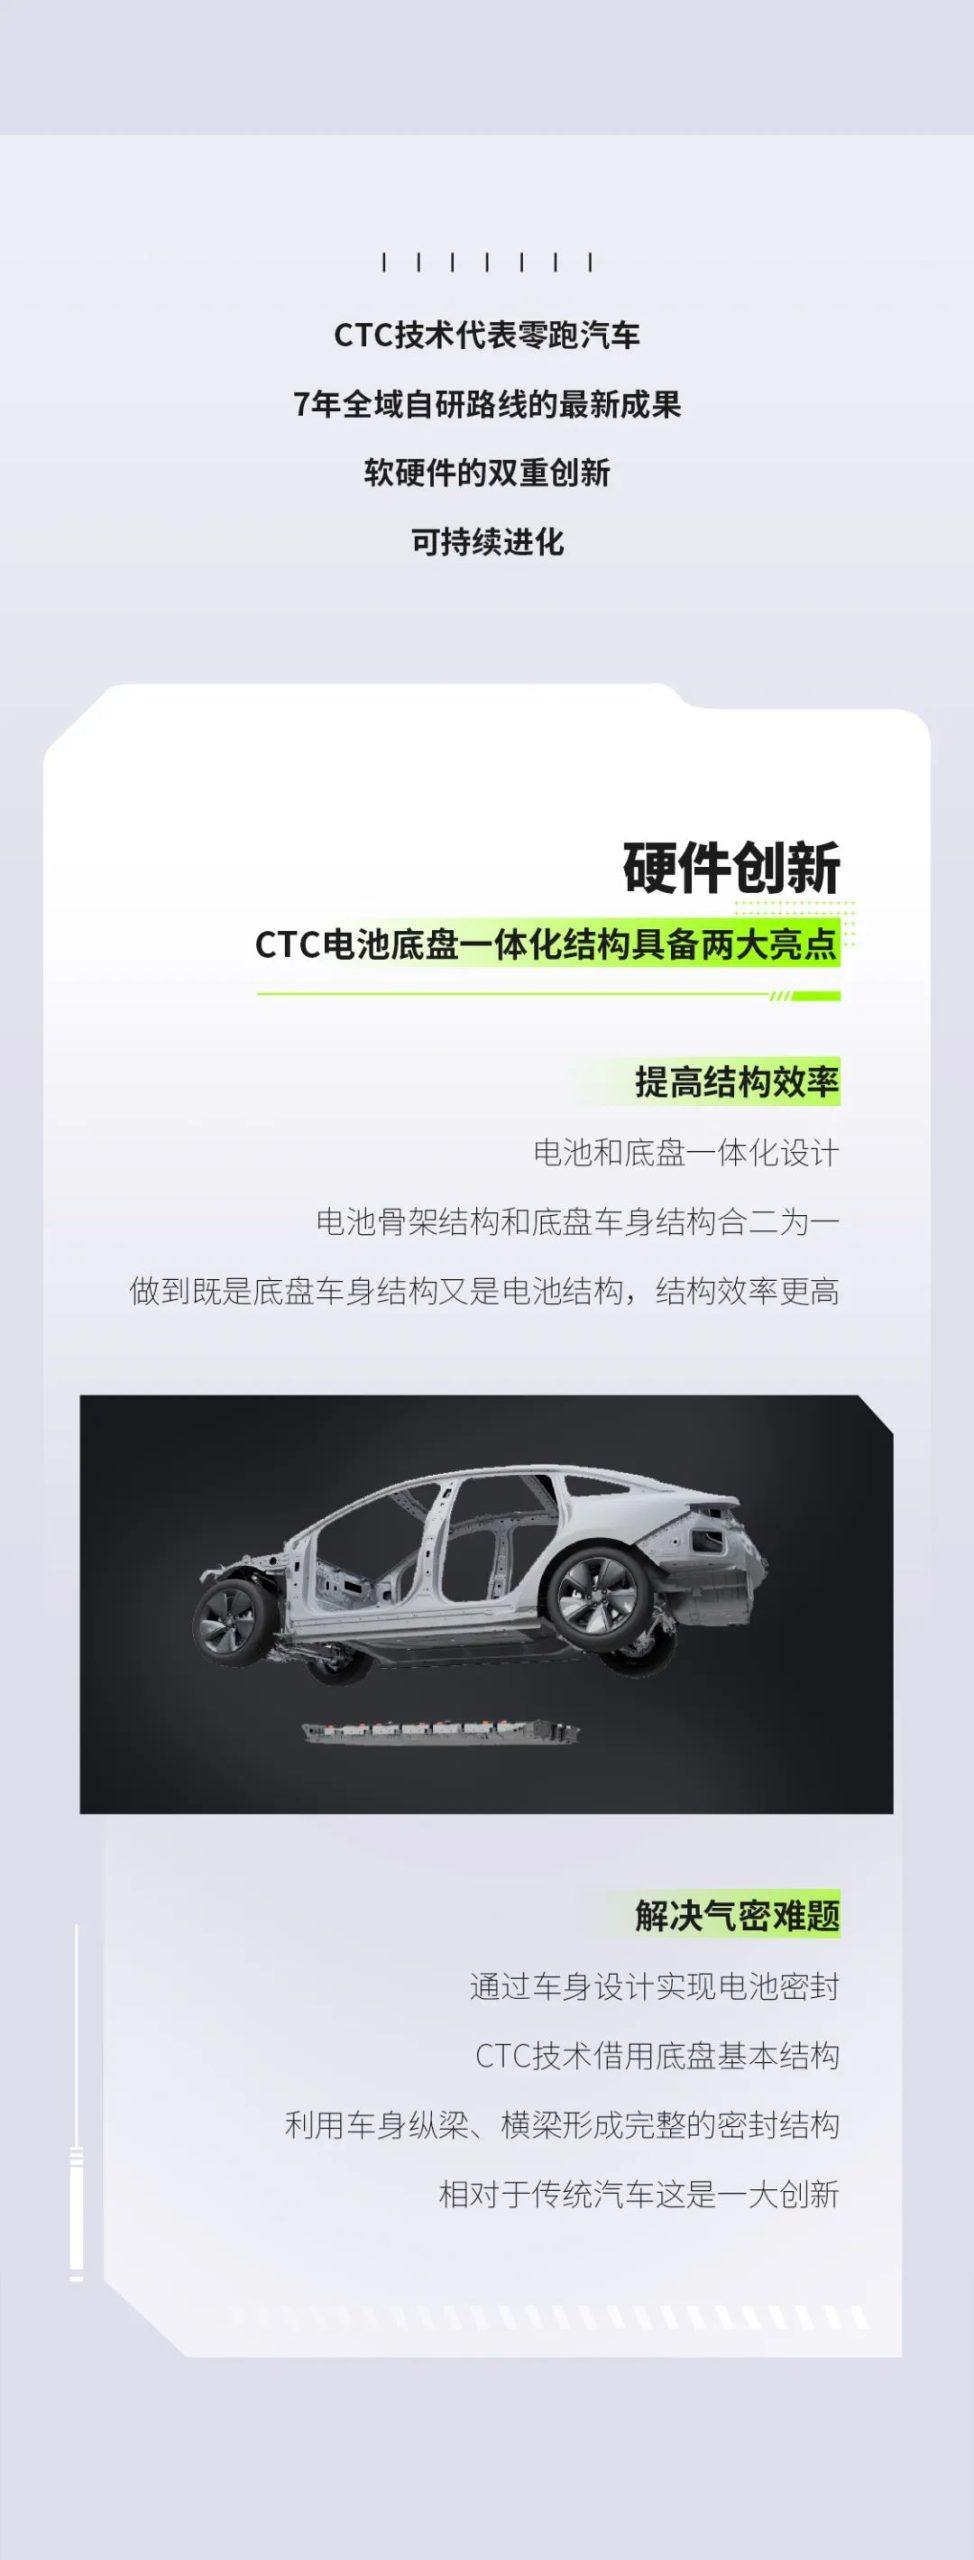 刚刚，零跑汽车全球首发电池底盘一体化“CTC”技术！